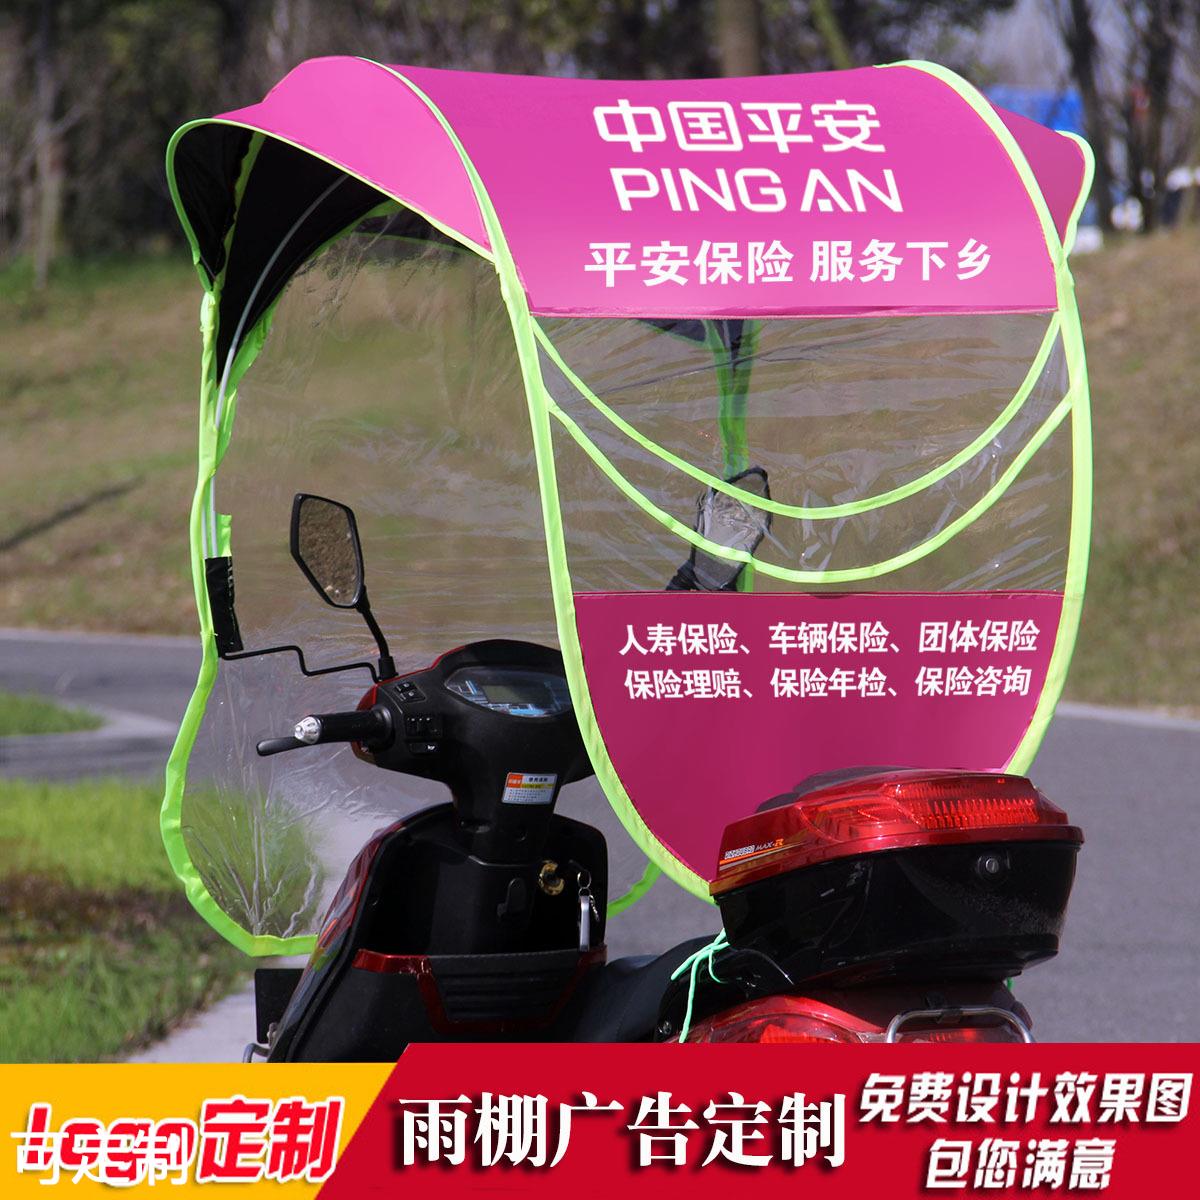 新款电动车雨棚 电瓶车遮阳伞 摩托车挡雨棚雨蓬带广告伞厂家logo